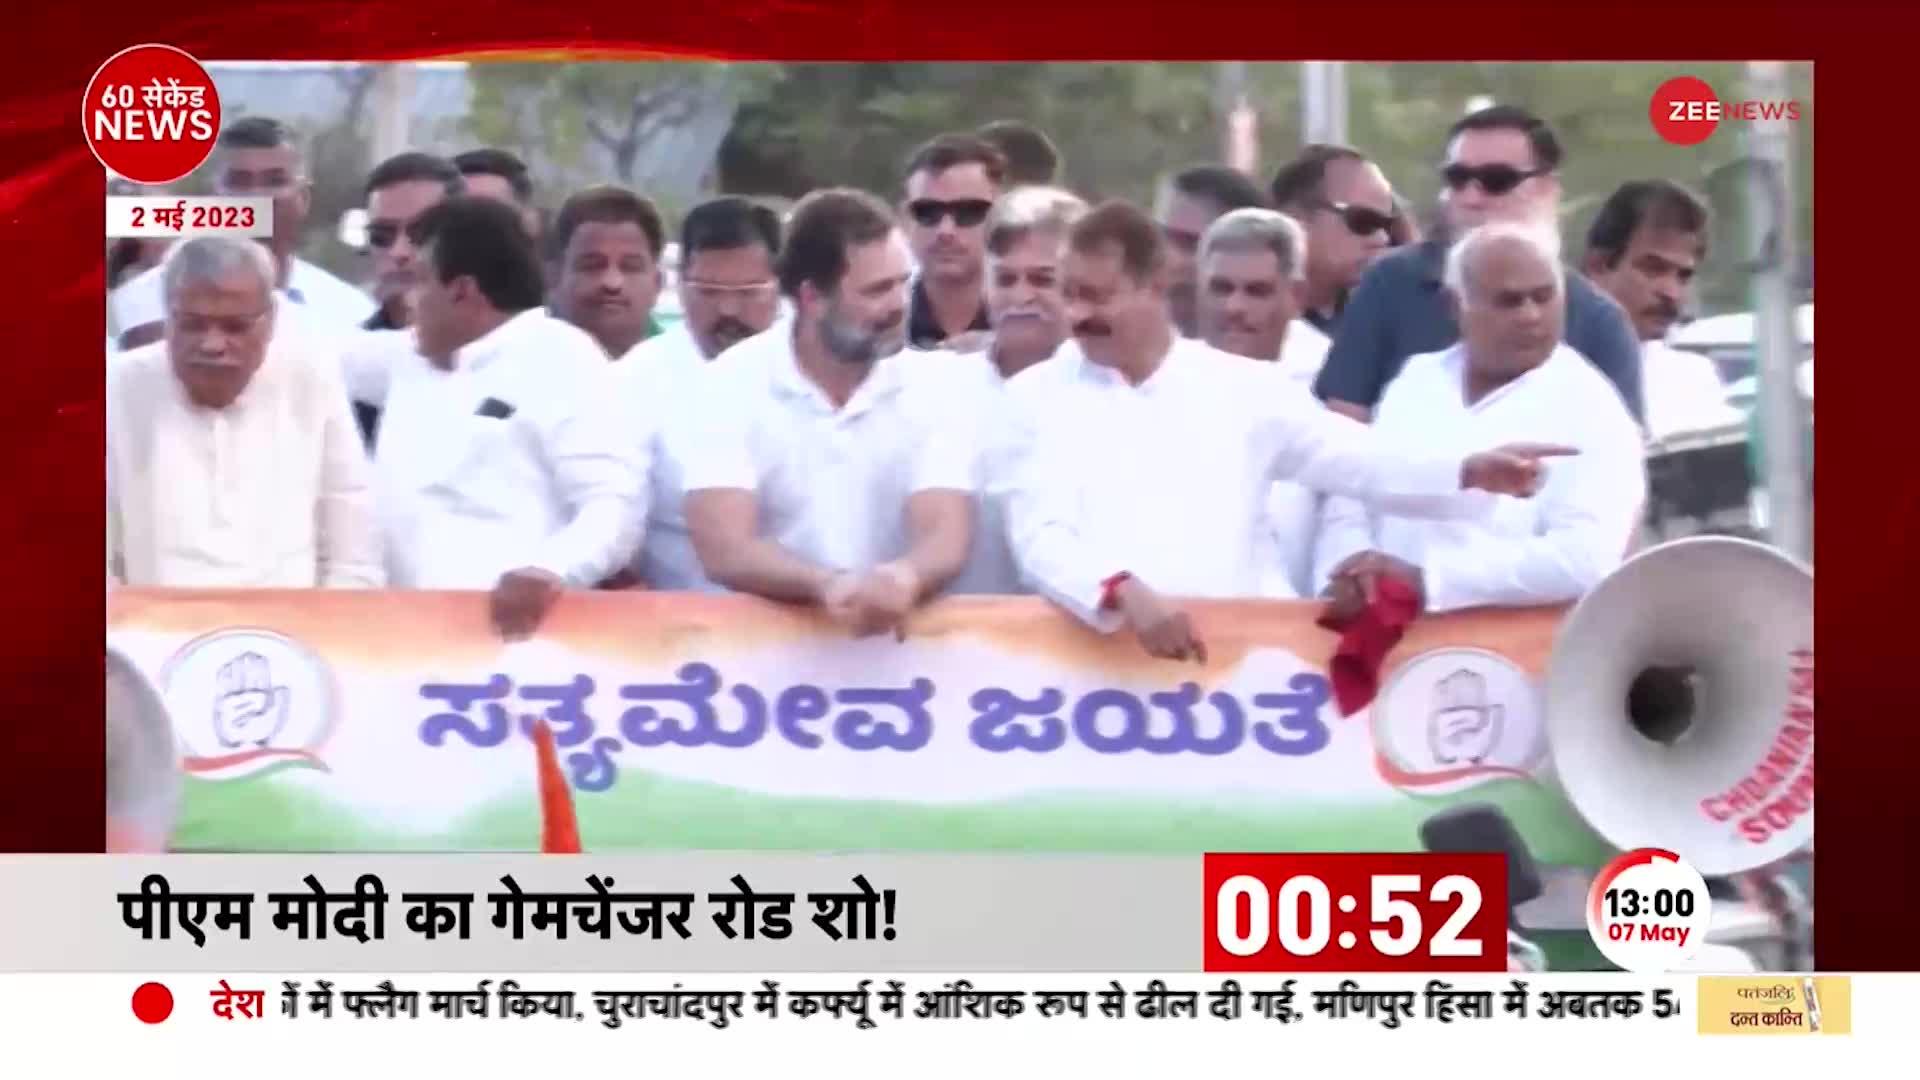 Karnataka Election 2023: कर्नाटक में पीएम मोदी का फाइनल राउंड का प्रचार, मेगा रोड शो में उमड़ी भीड़